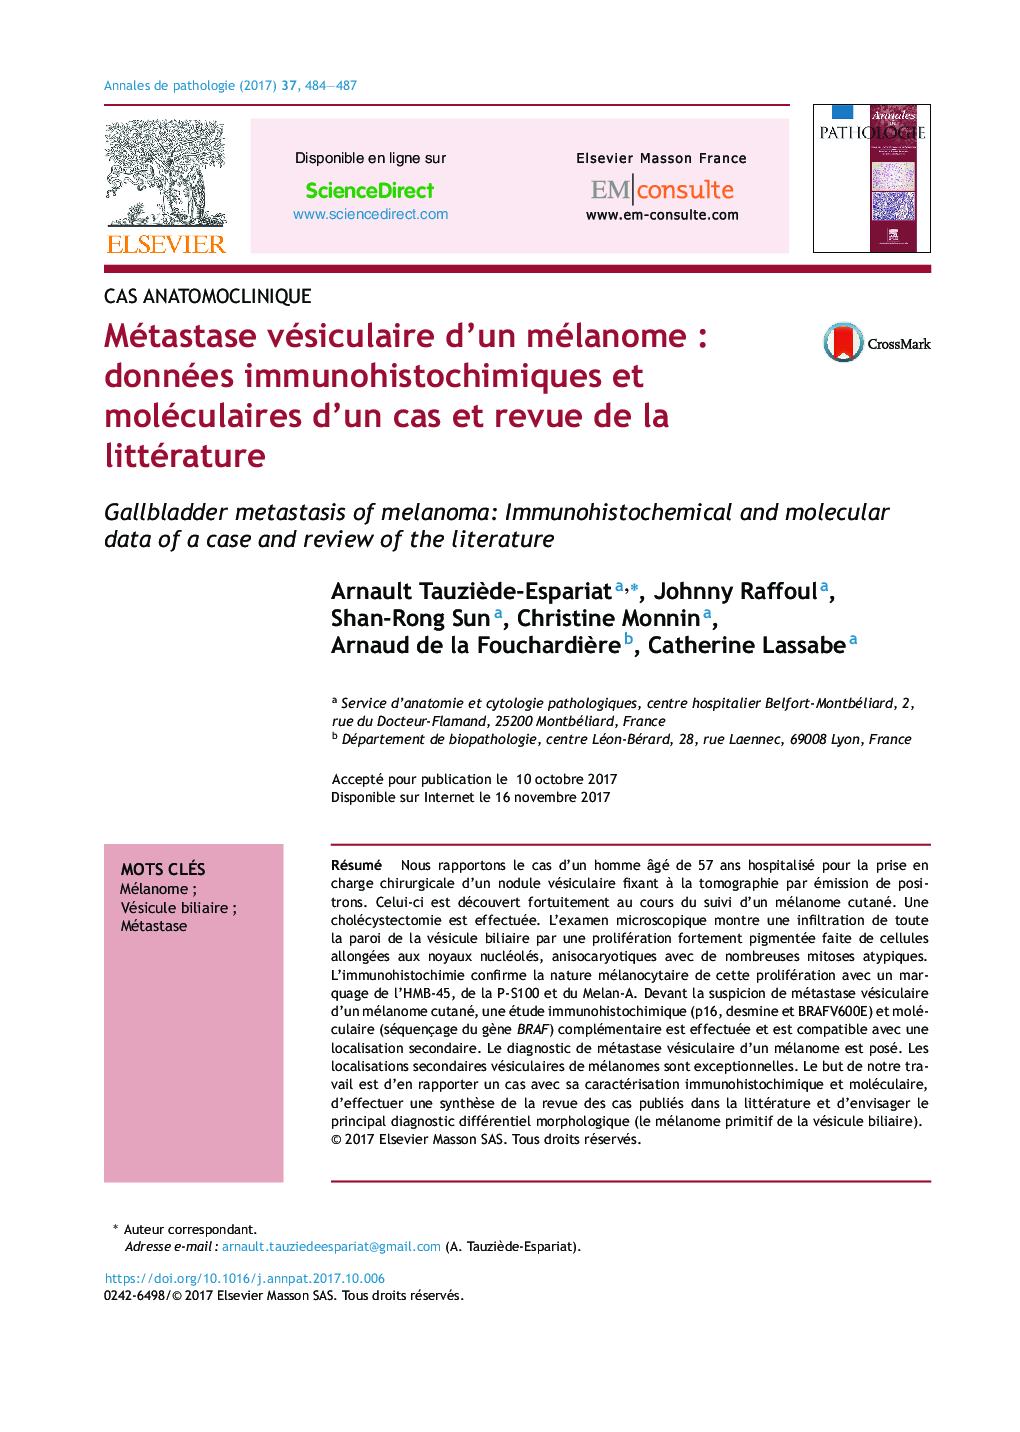 Métastase vésiculaire d'un mélanomeÂ : données immunohistochimiques et moléculaires d'un cas et revue de la littérature